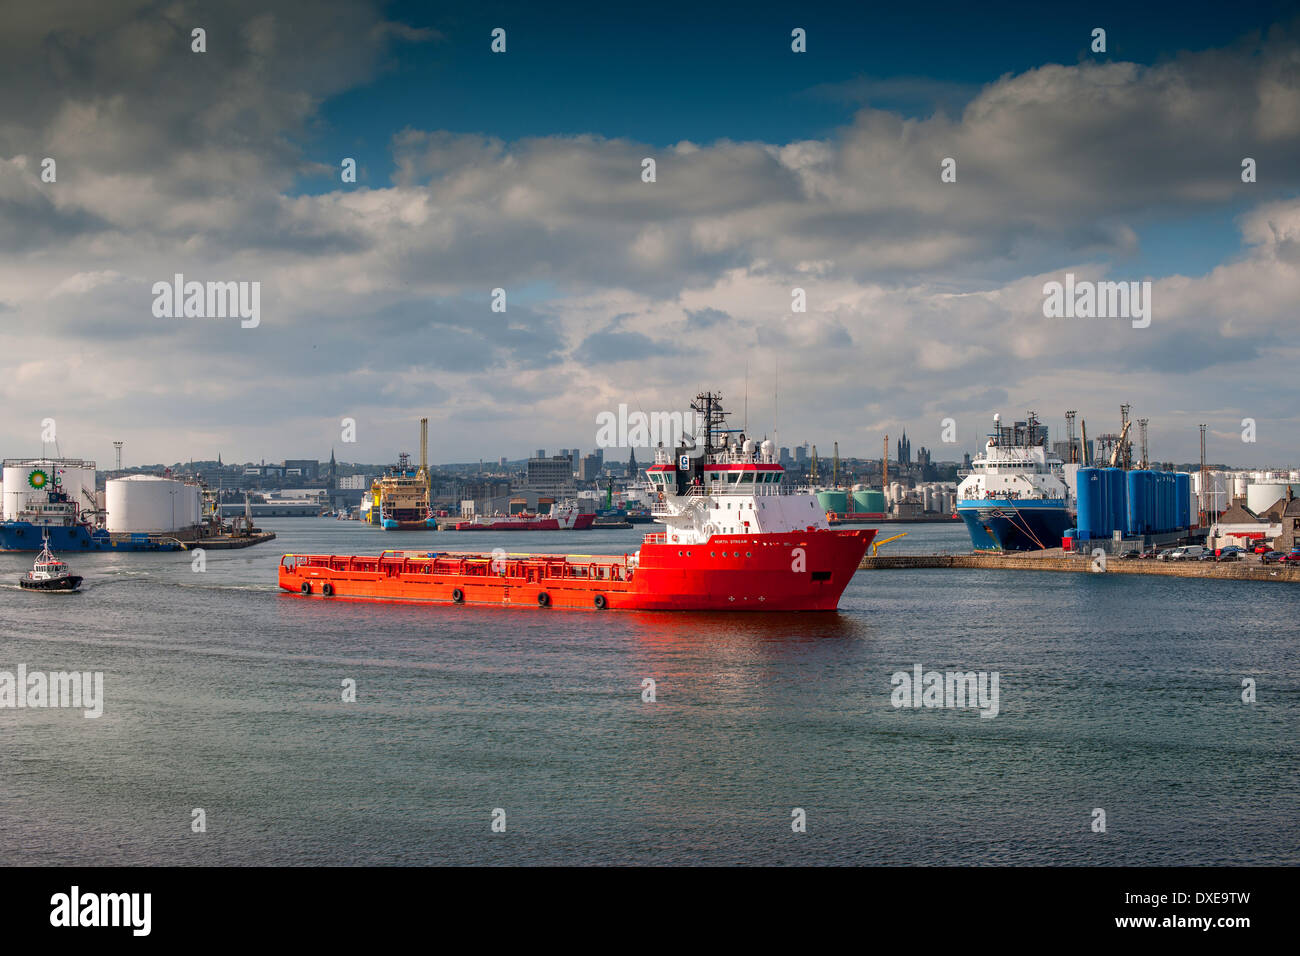 Eine geschäftige Szene im Hafen von Aberdeen mit Öl im Zusammenhang Schiffe und Wasserfahrzeuge im Blick. Aberdeenshire, Schottland. Stockfoto